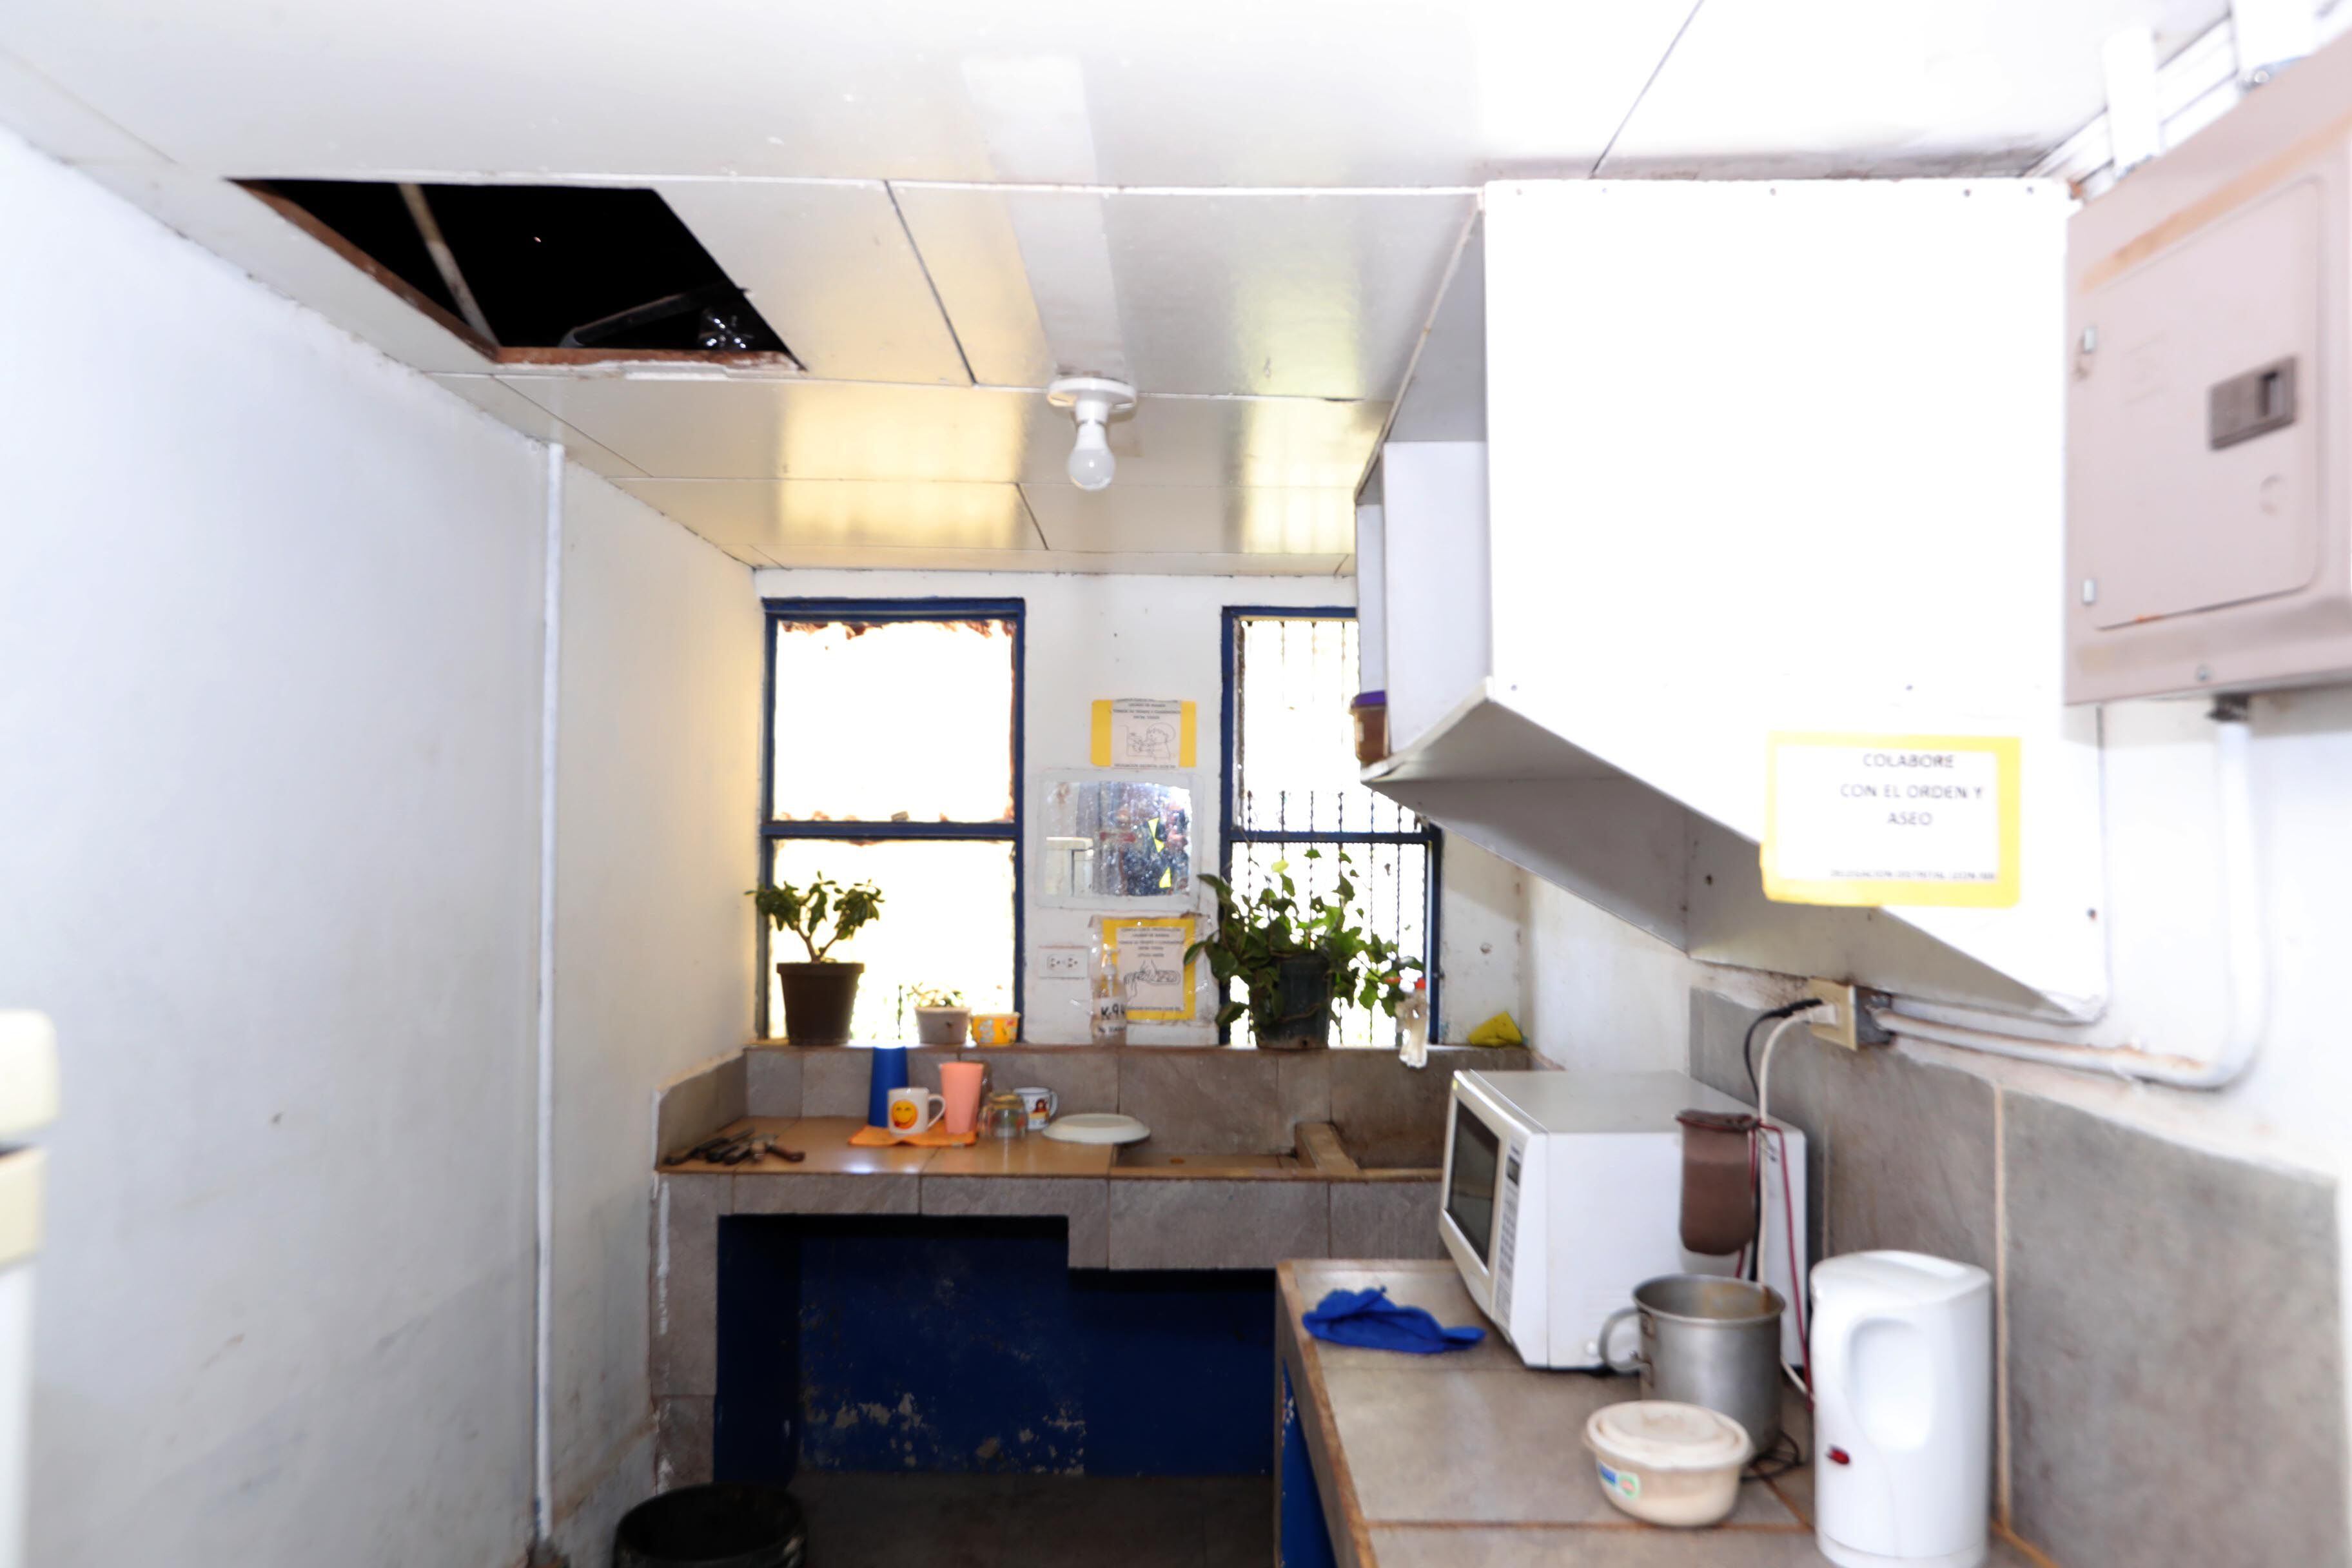 Así luce la cocina de una delegación policial de San José. La falta de cielorraso provoca filtraciones durante la época de lluvias. Foto: 